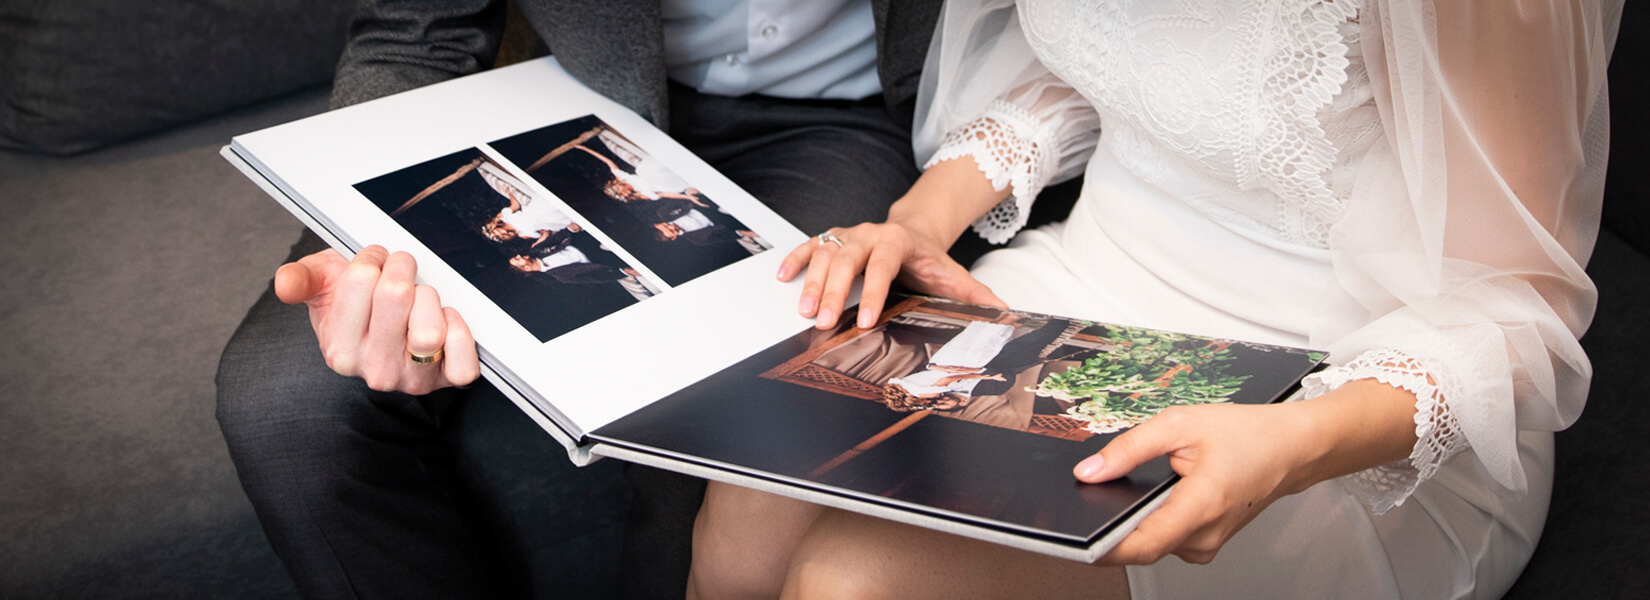 profesjonalne fotoalbumy ślubne dla fotografów